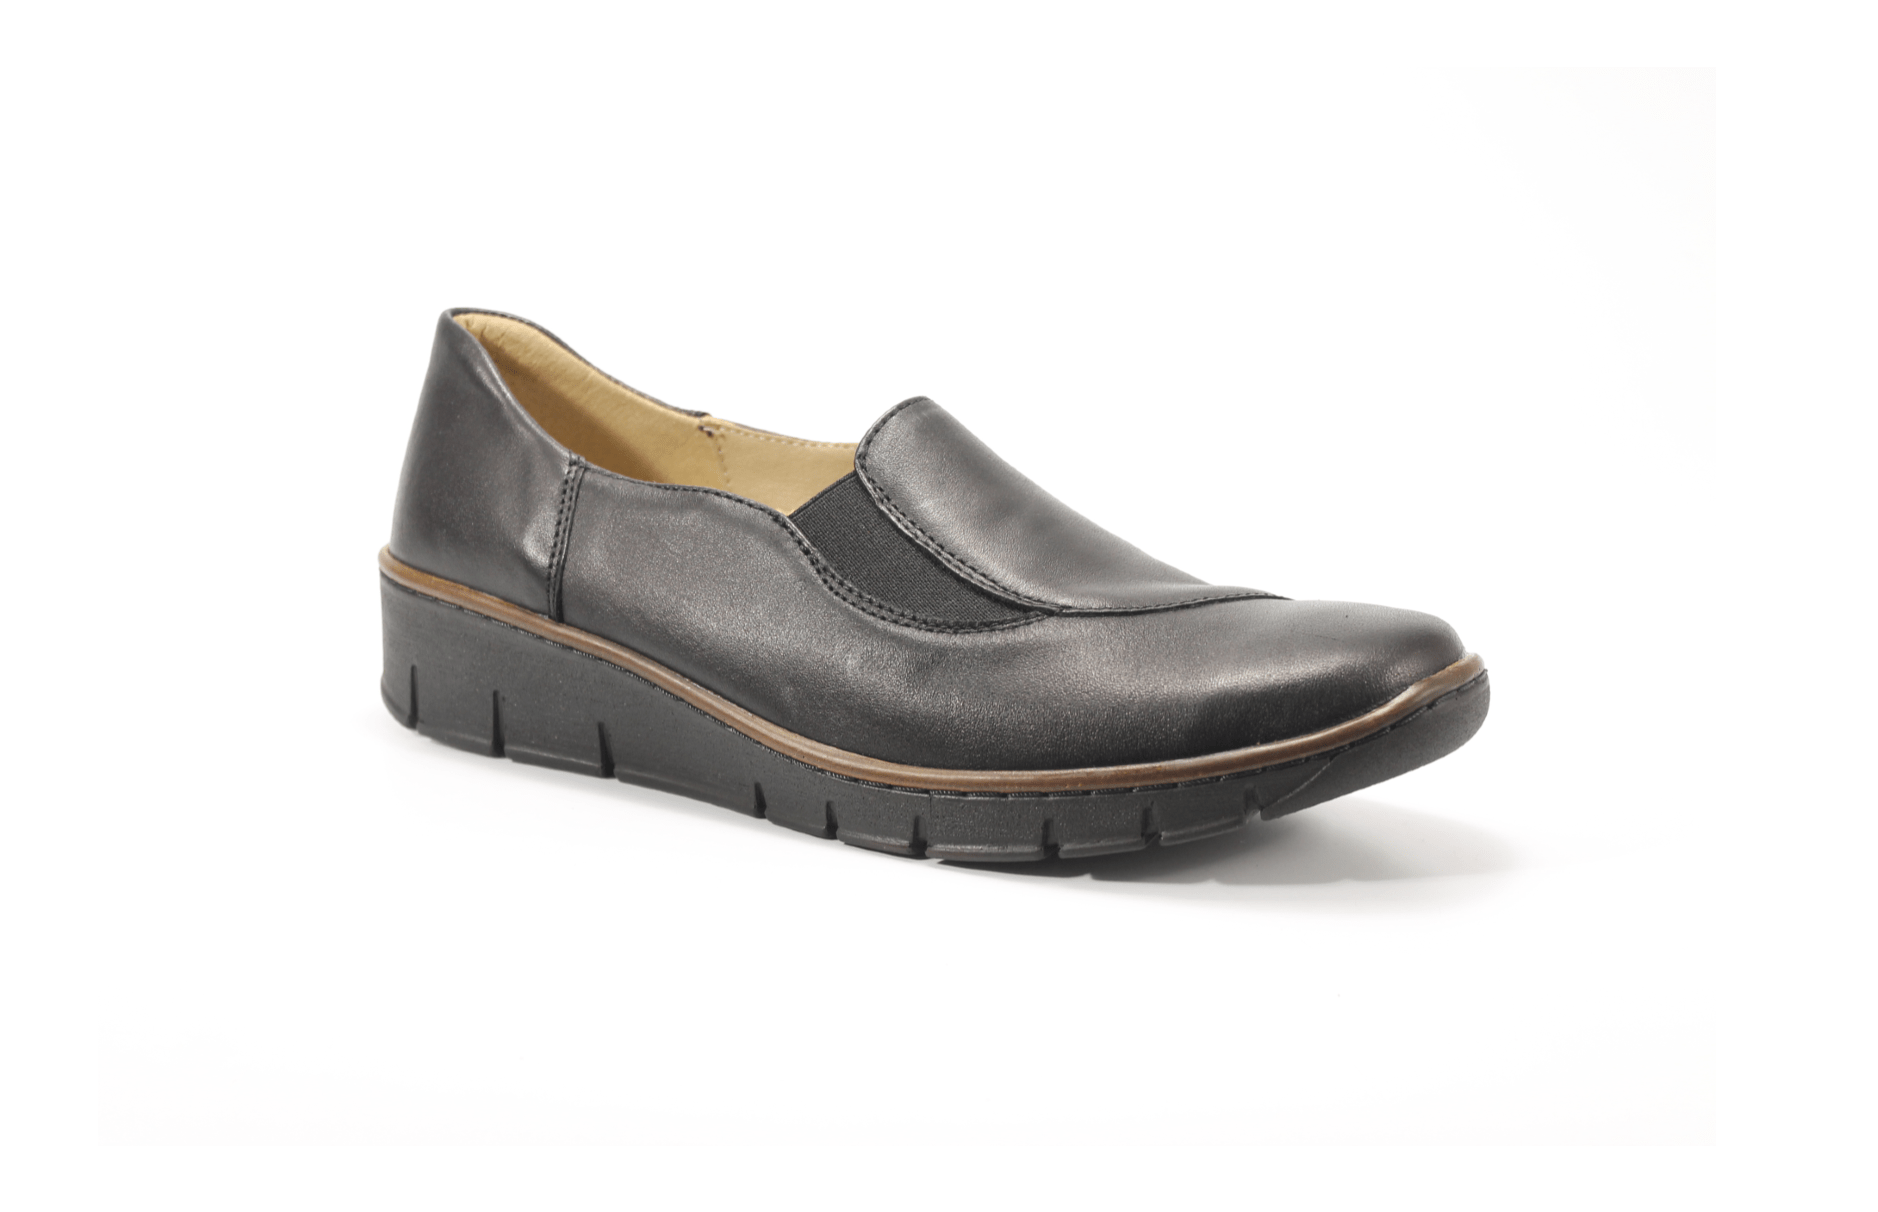 HELIOS komfort leather shoes - Bestshoes